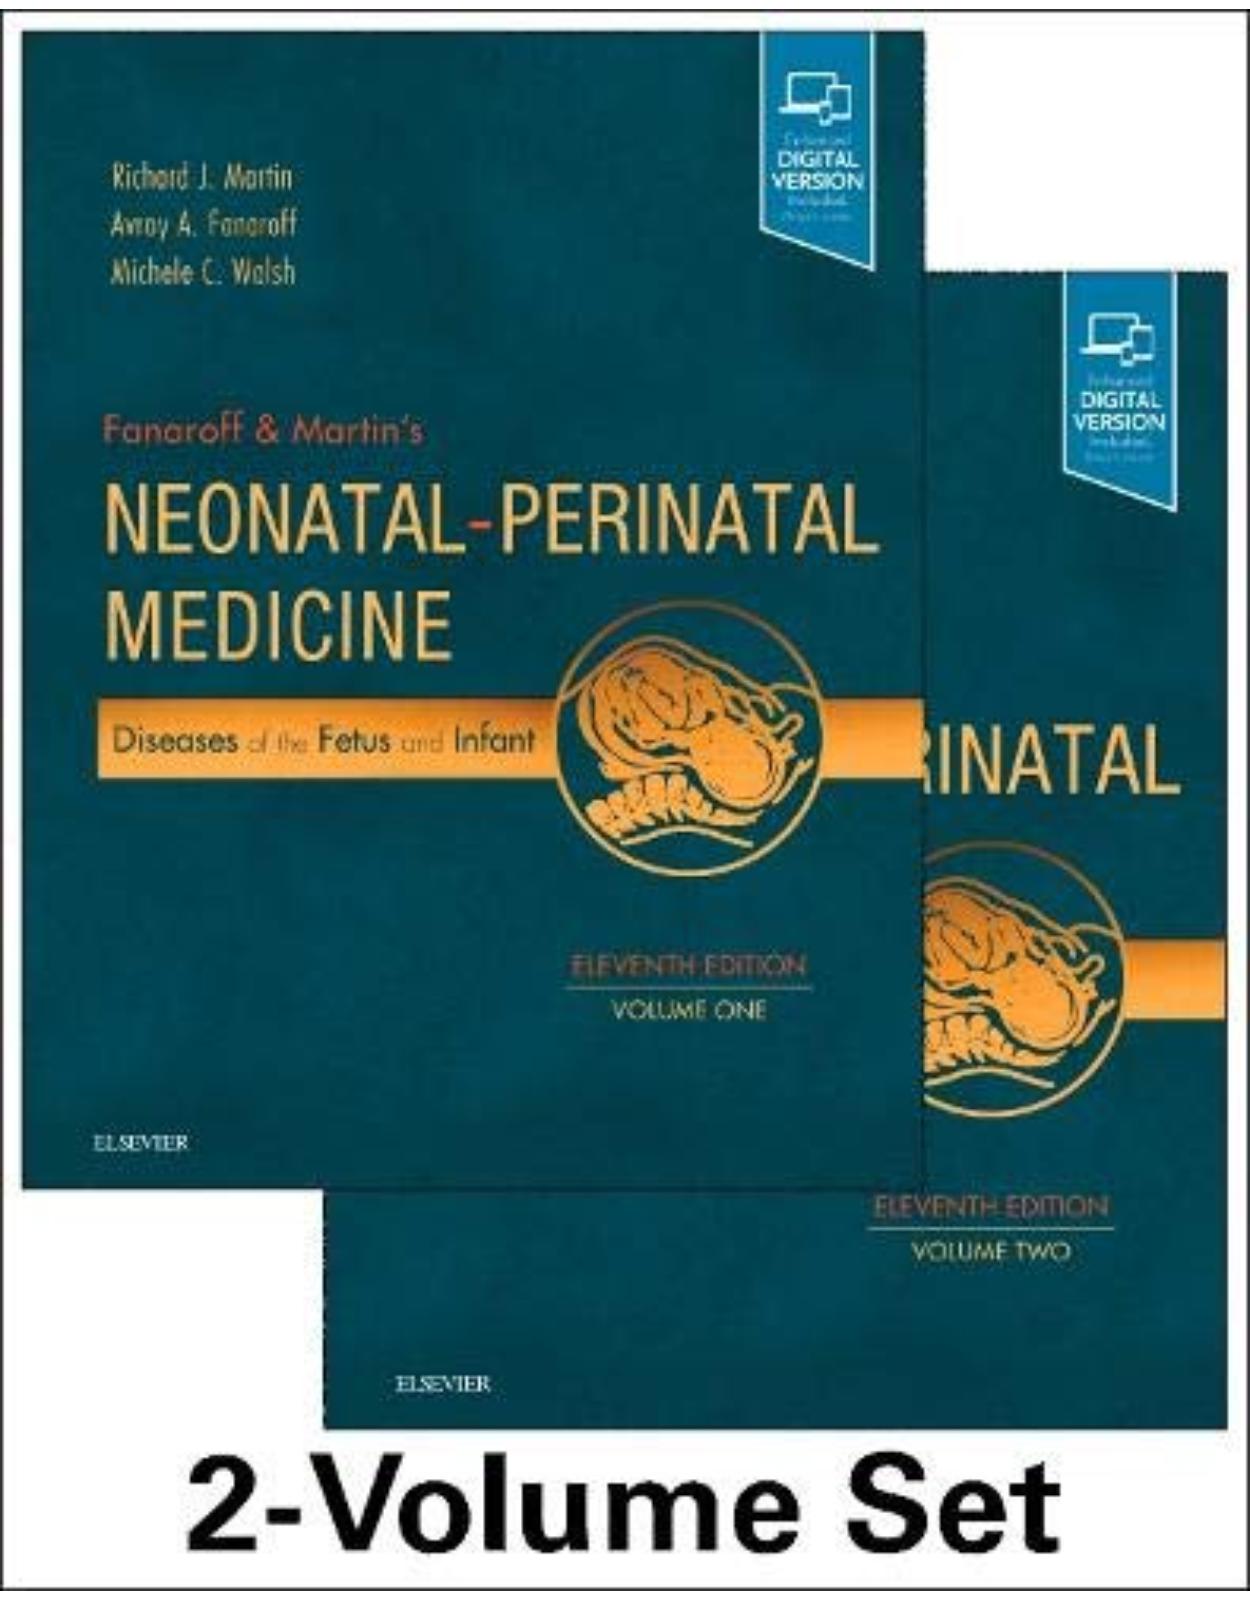 Fanaroff and Martin s Neonatal-Perinatal Medicine, 2-Volume Set, 11th Edition